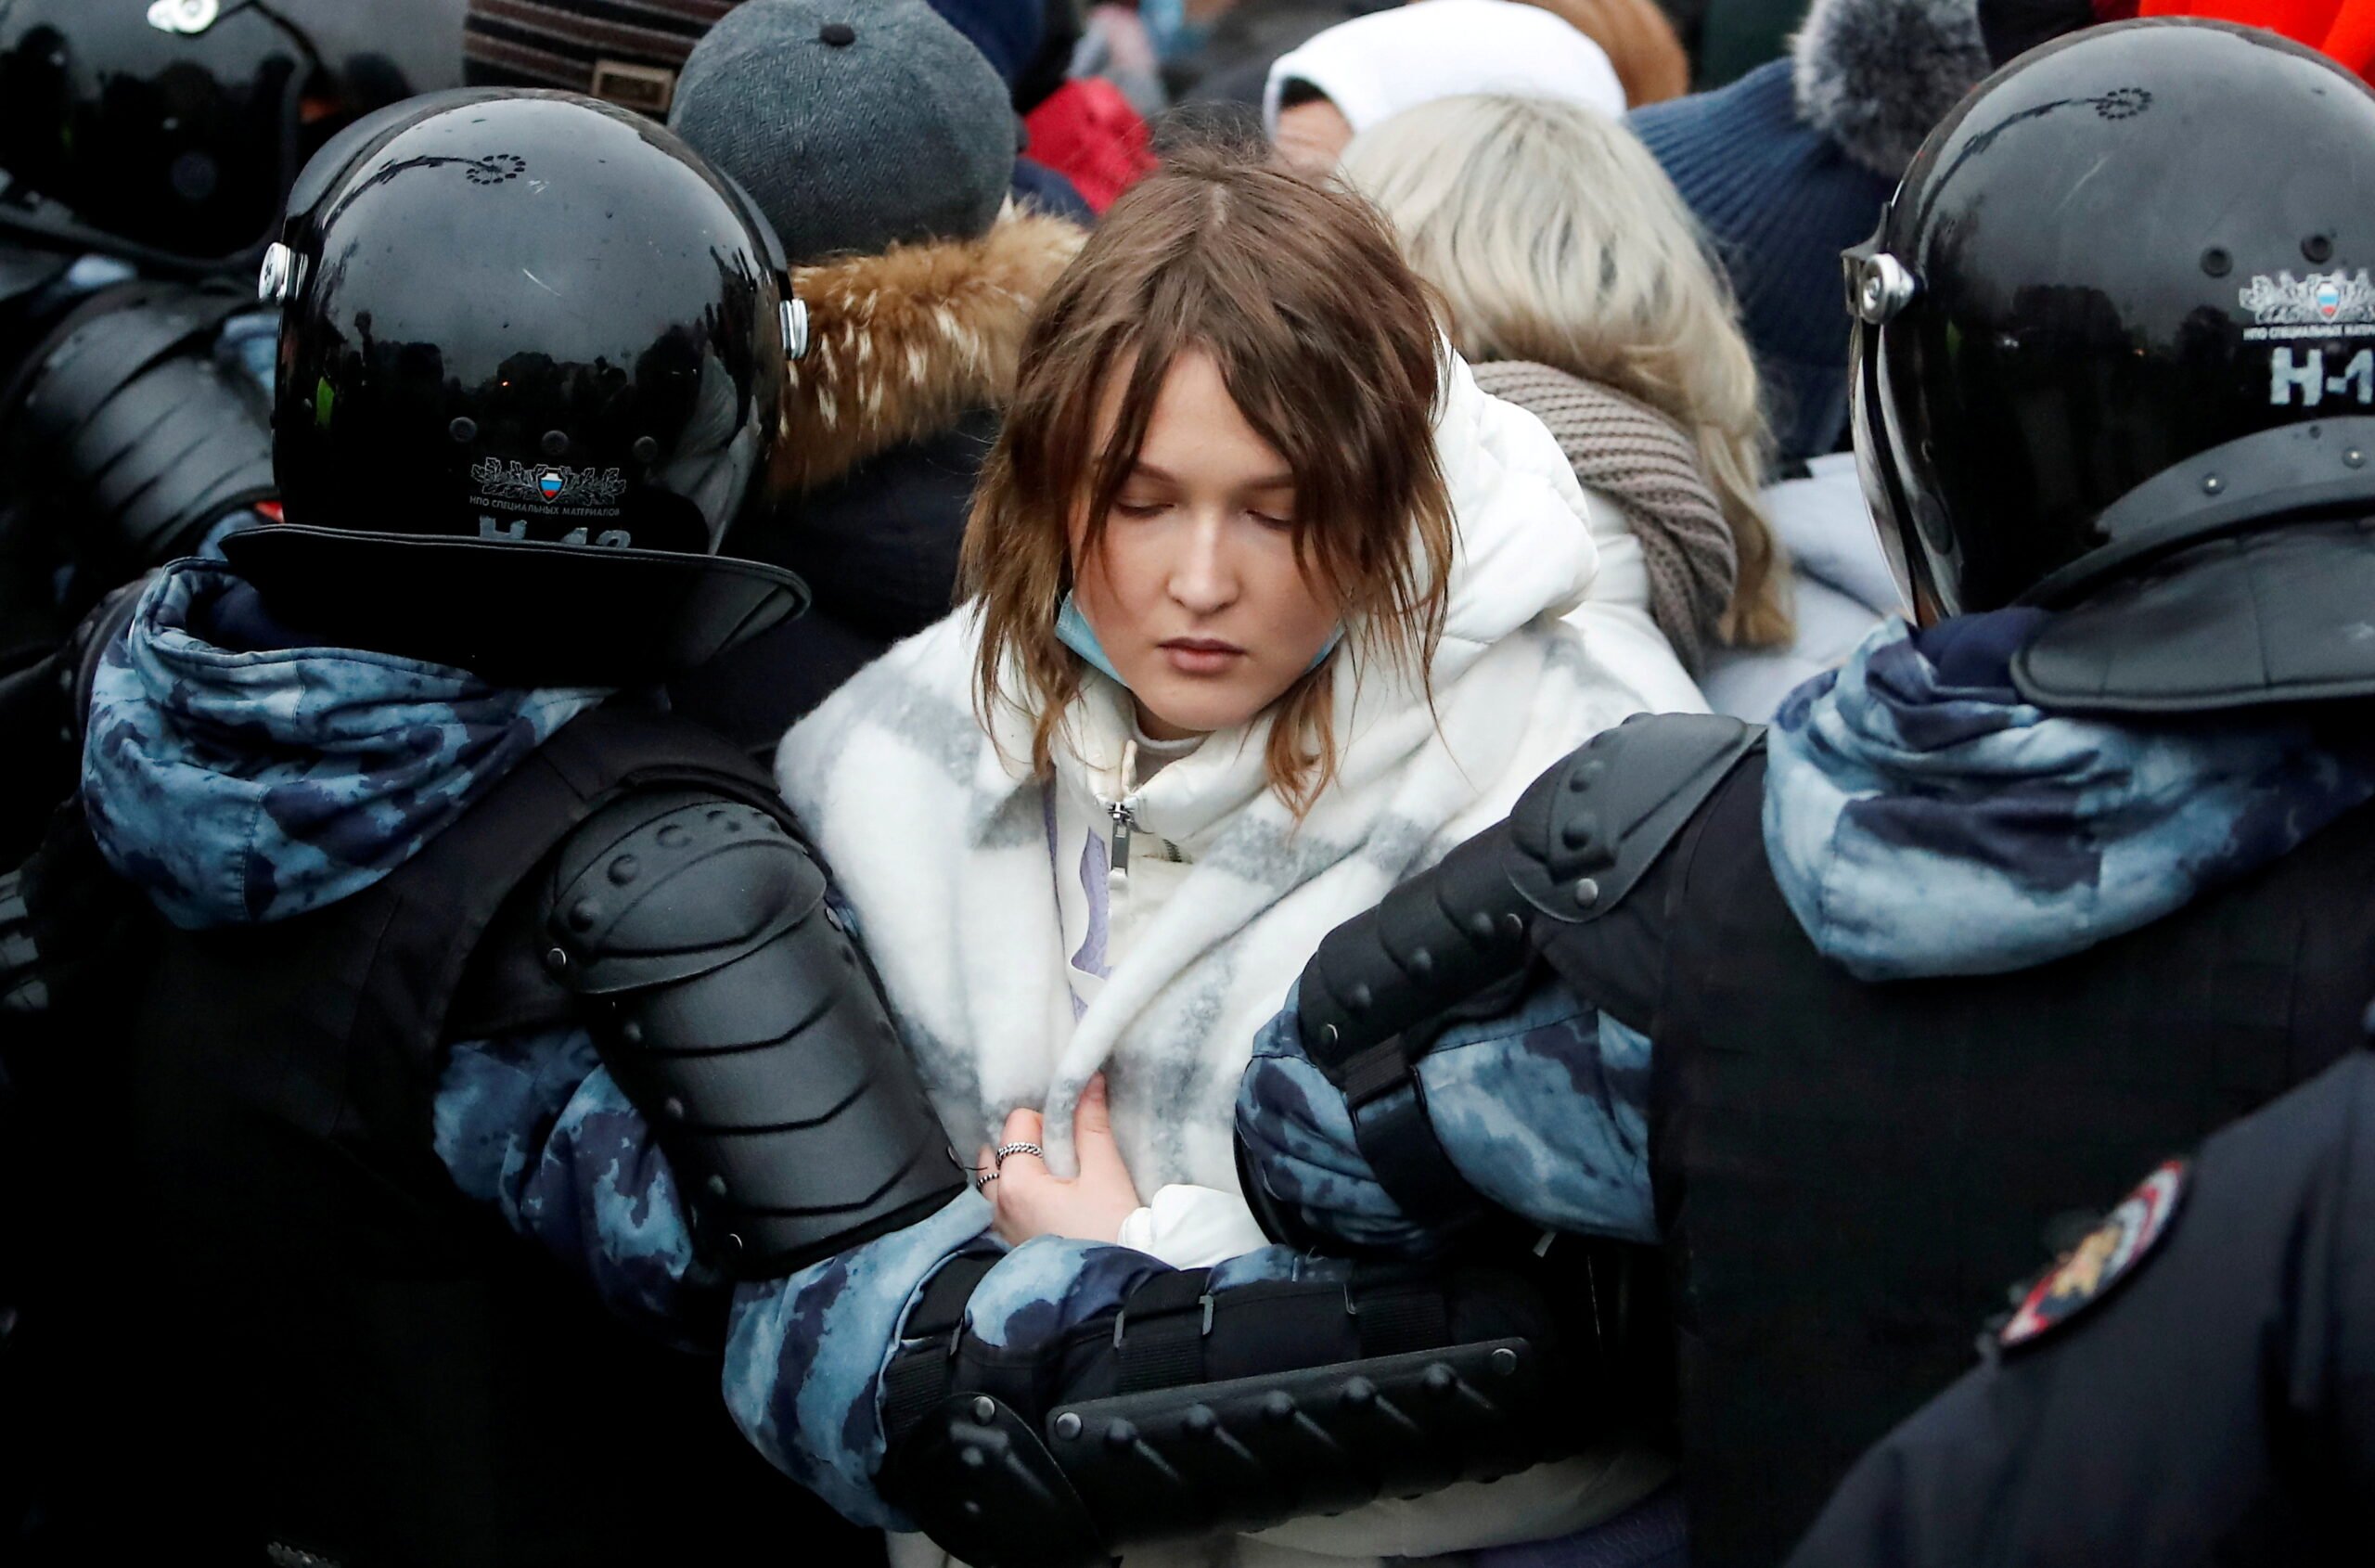 Η Ρωσία επιβάλλει πρόστιμα για παραβιάσεις διαμαρτυρίας μετά τις συγκεντρώσεις του Ναβάλι